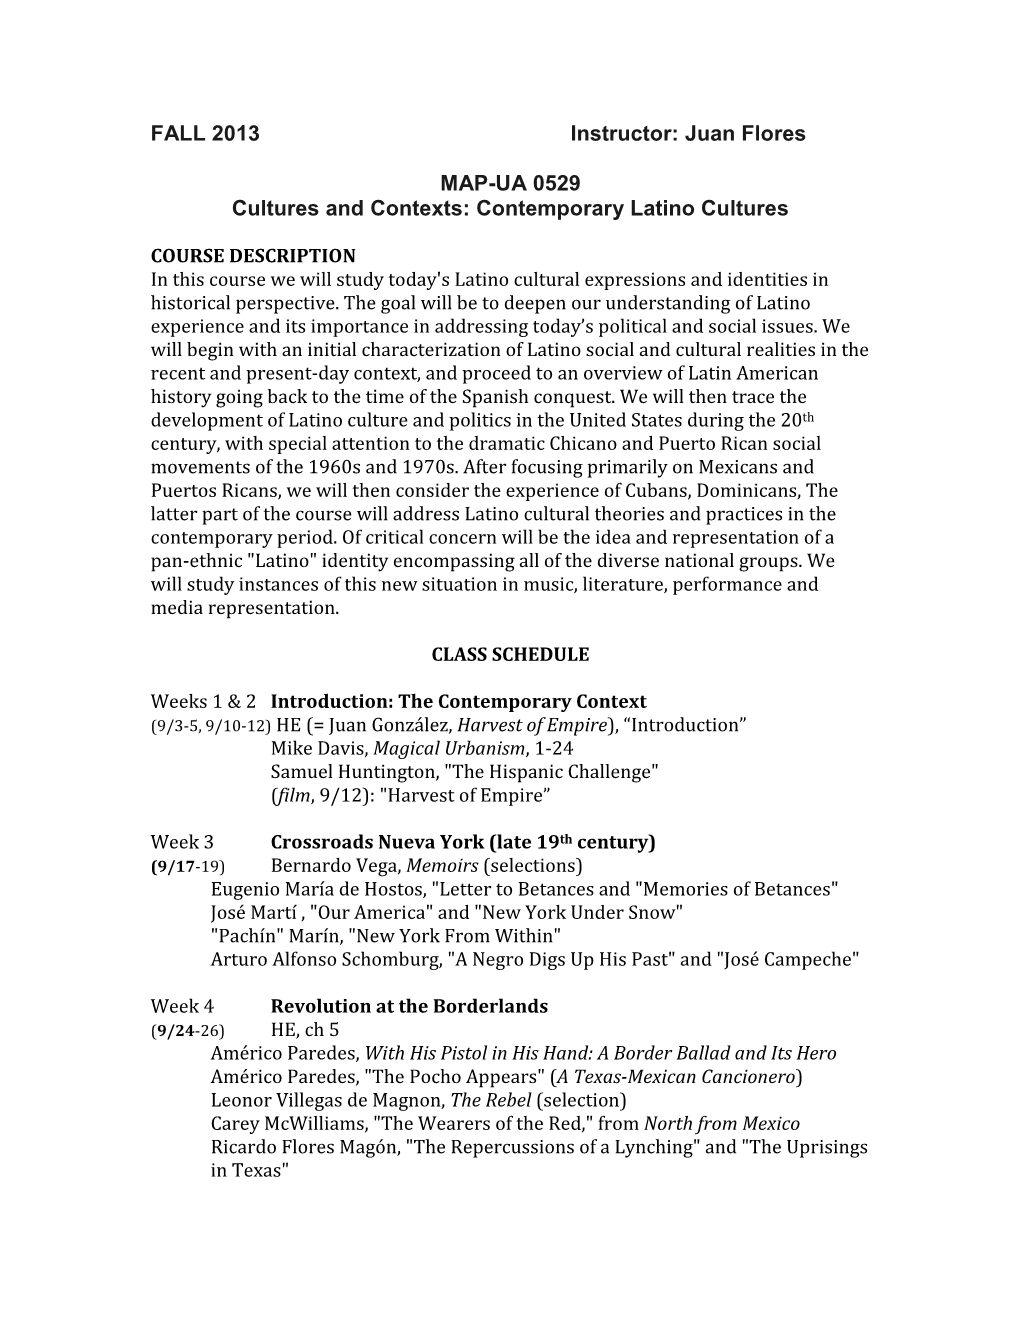 Juan Flores MAP-UA 0529 Cultures and Contexts